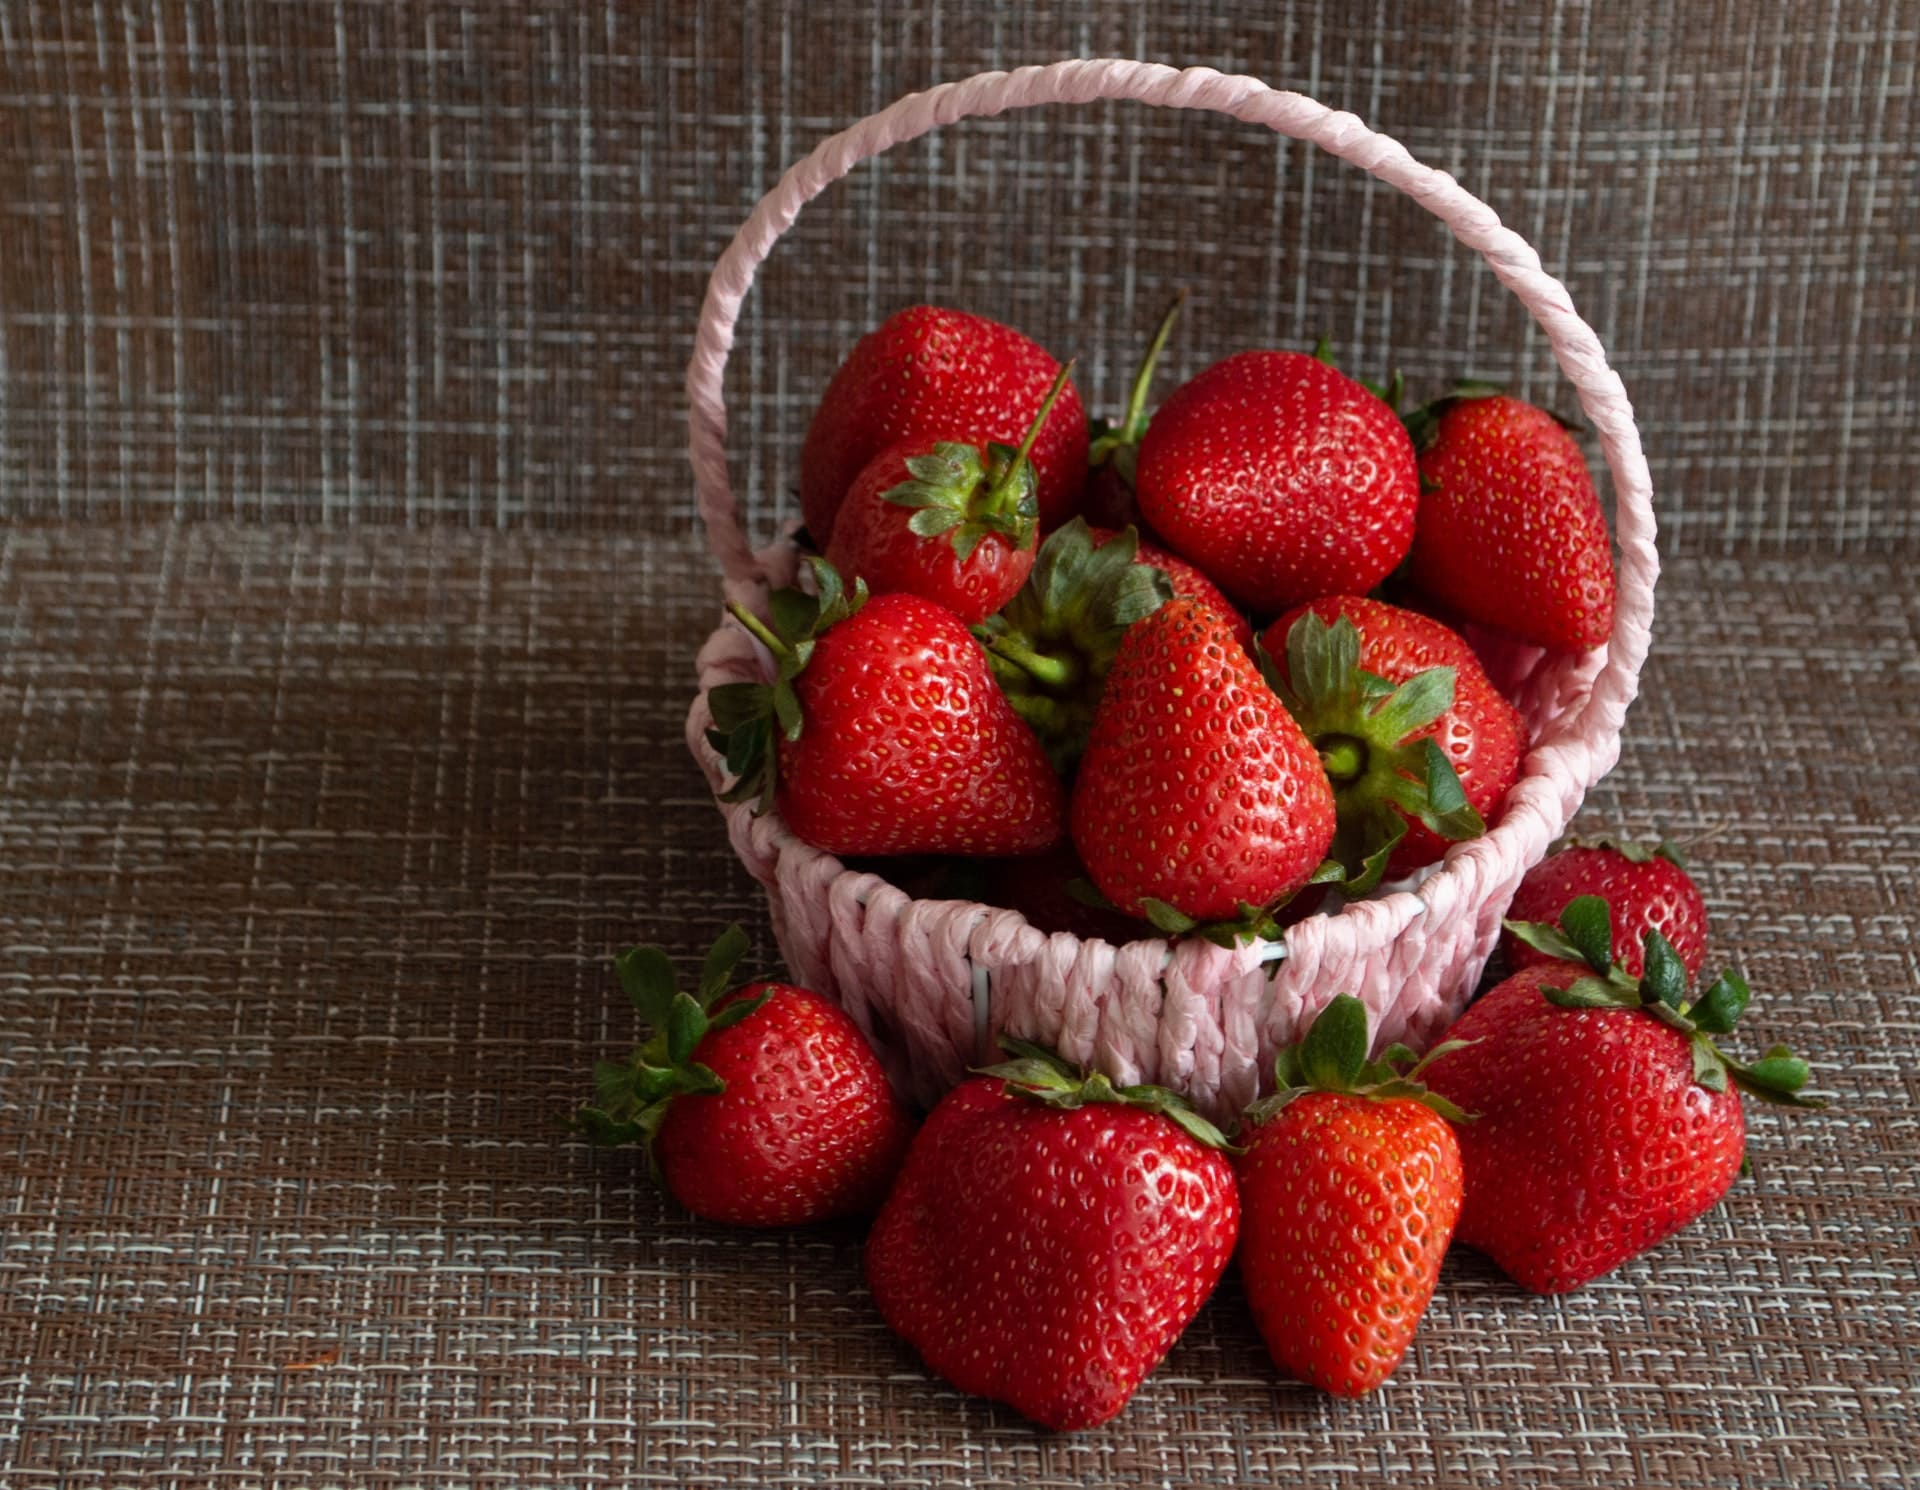 Strawberries in a Basket field